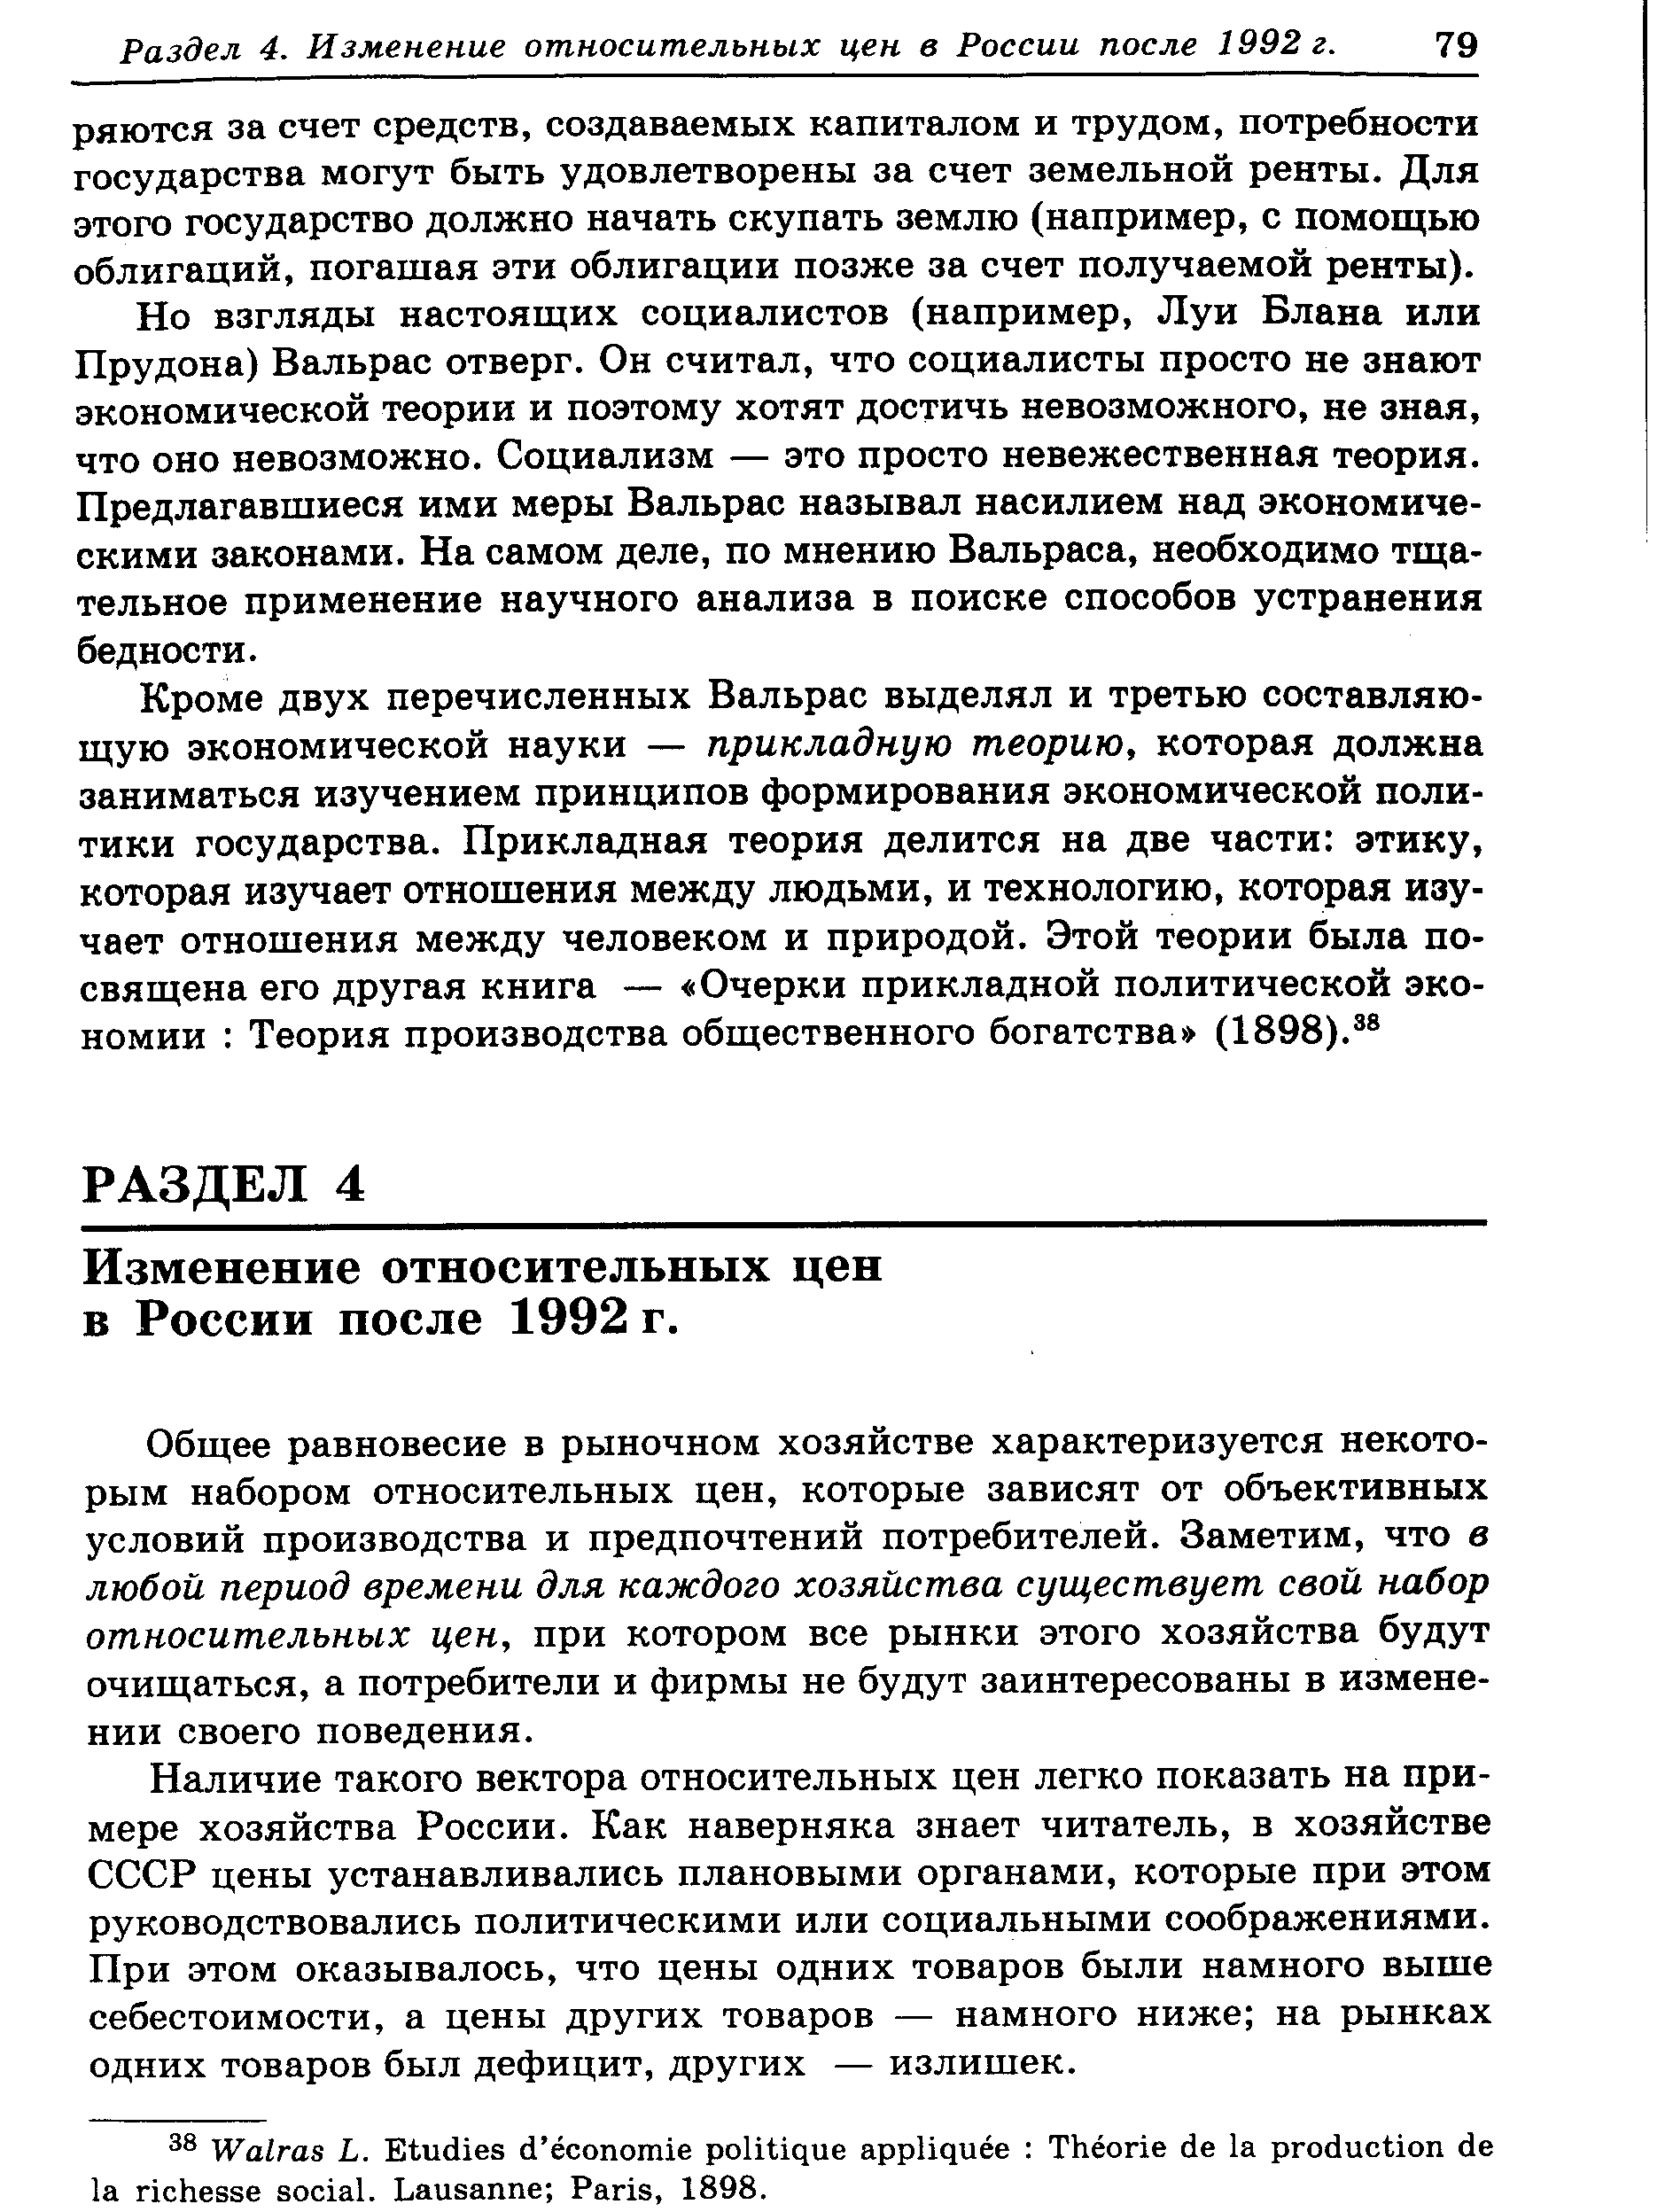 Изменение относительных цен в России после 1992 г.
